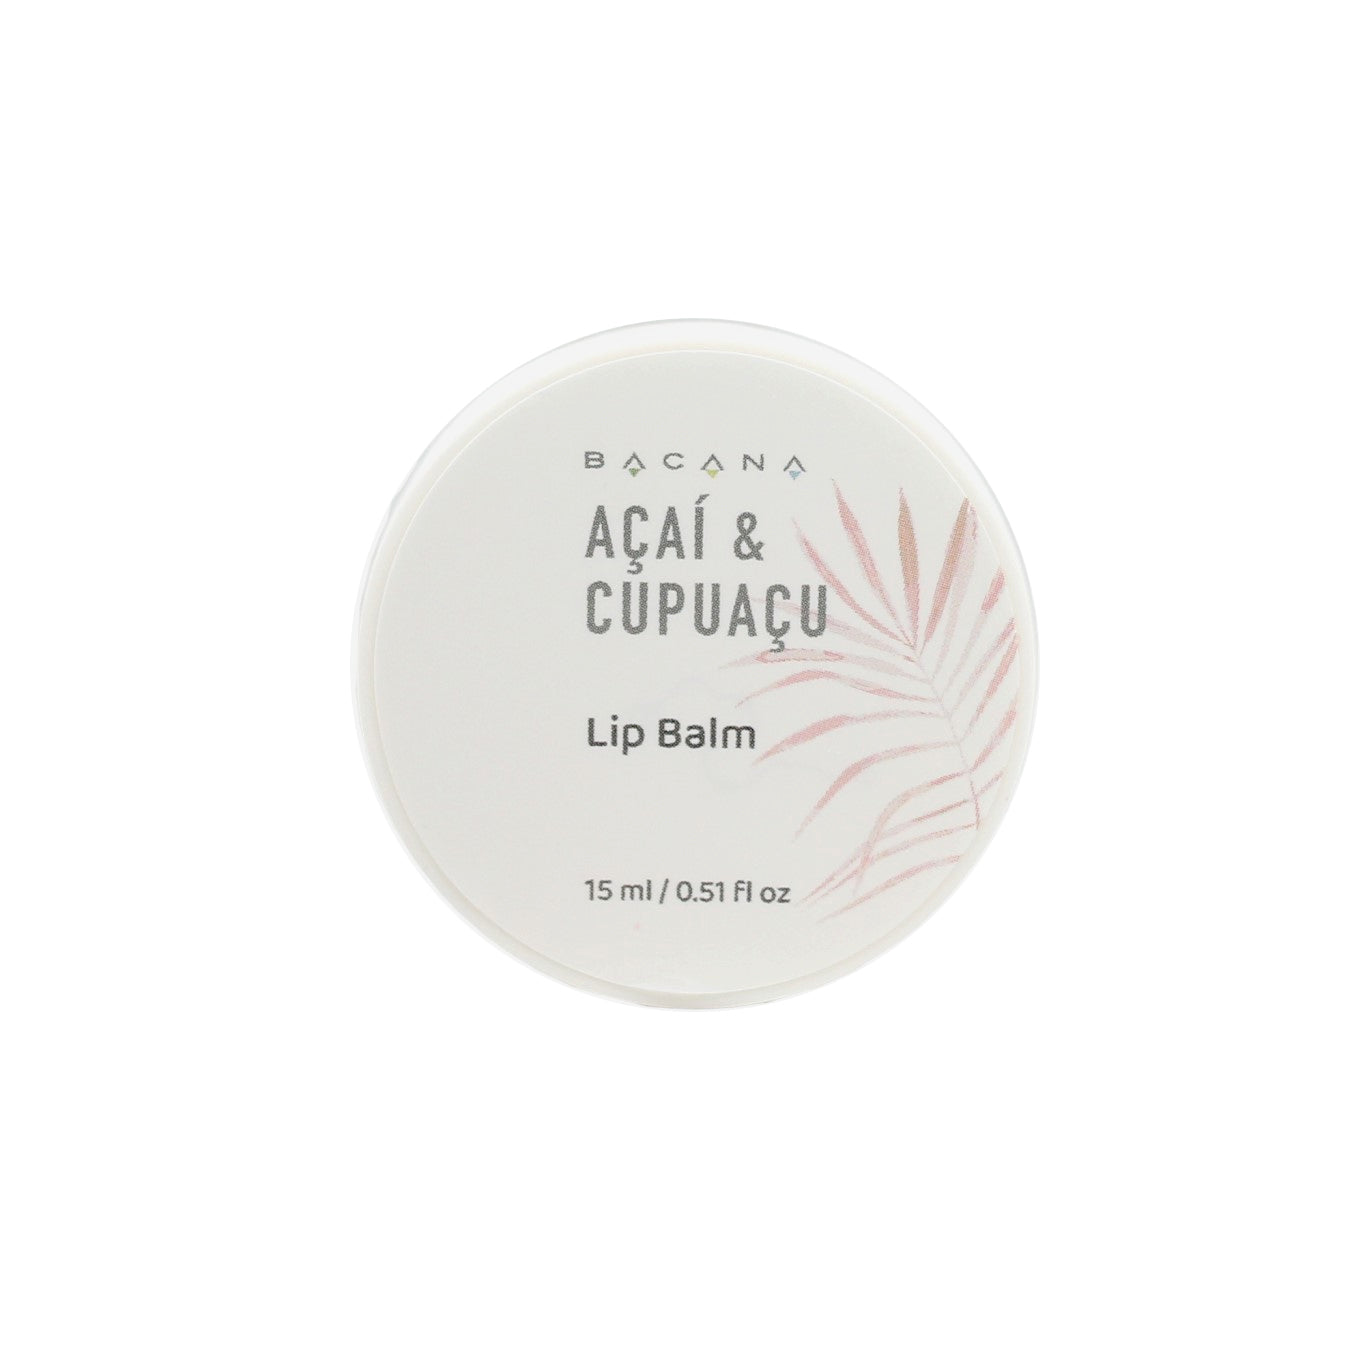 Acai & Cupuacu Lip & Skin Balm.